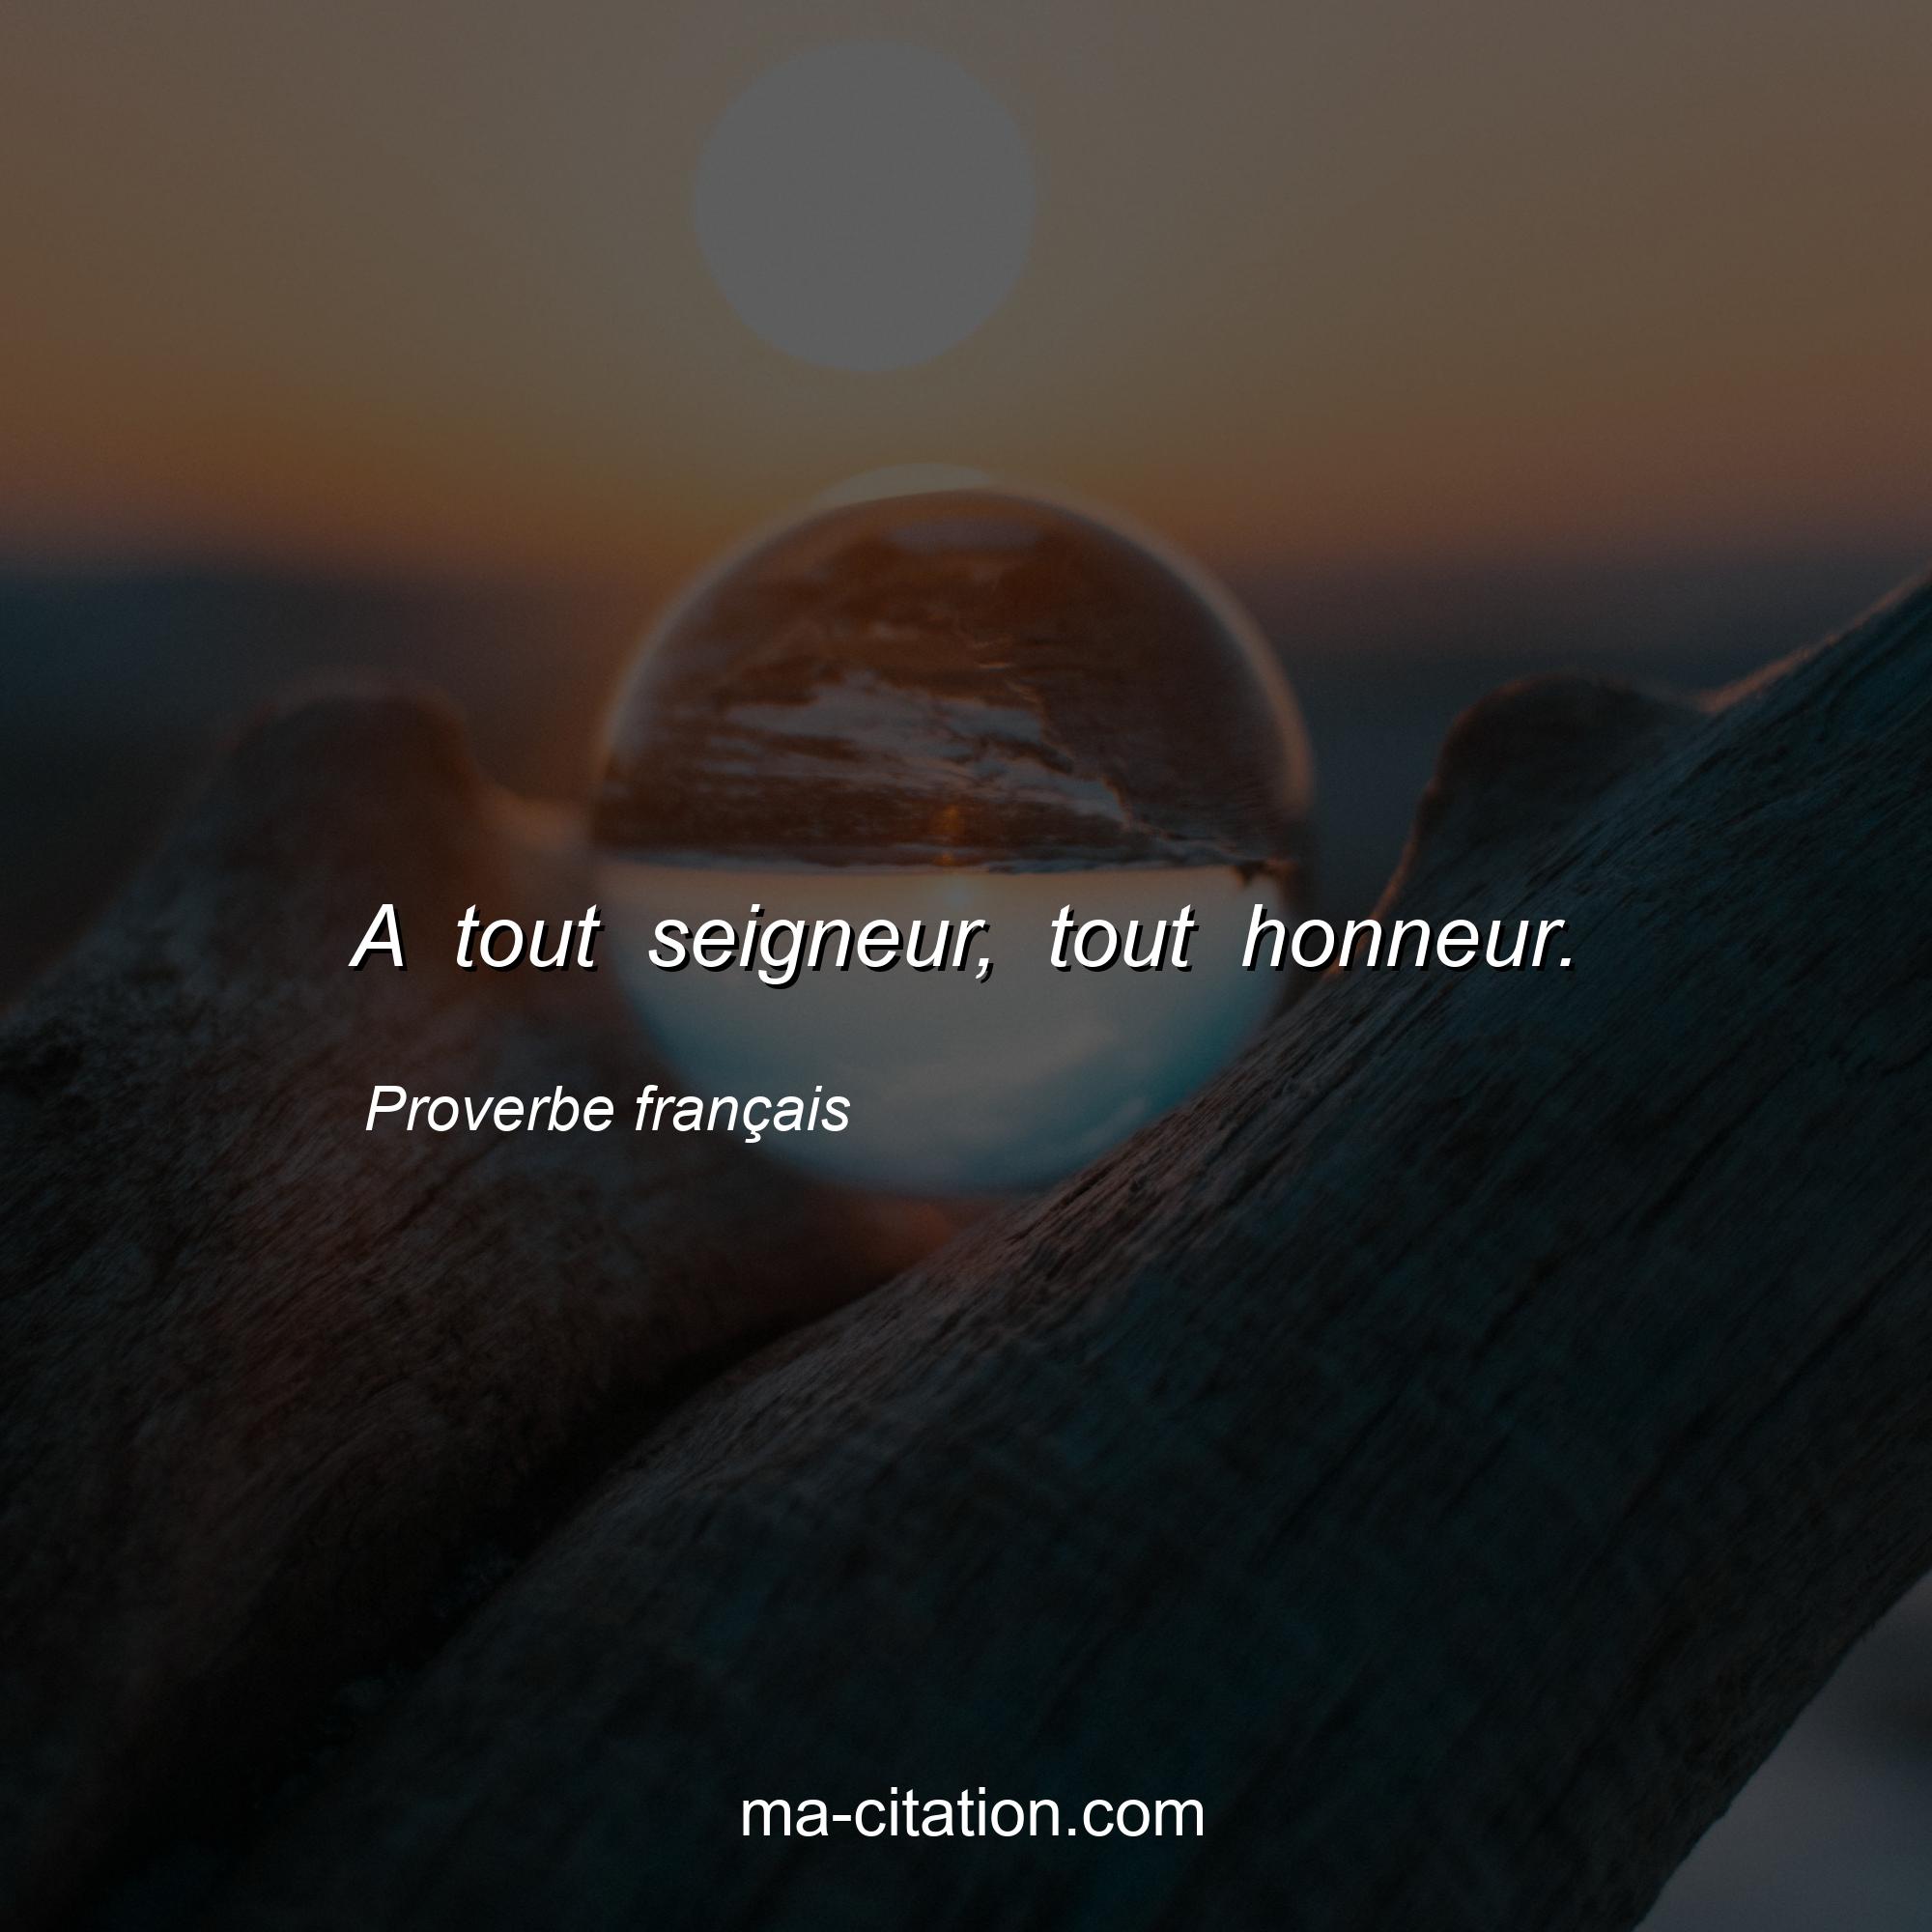 Proverbe français : A tout seigneur, tout honneur.